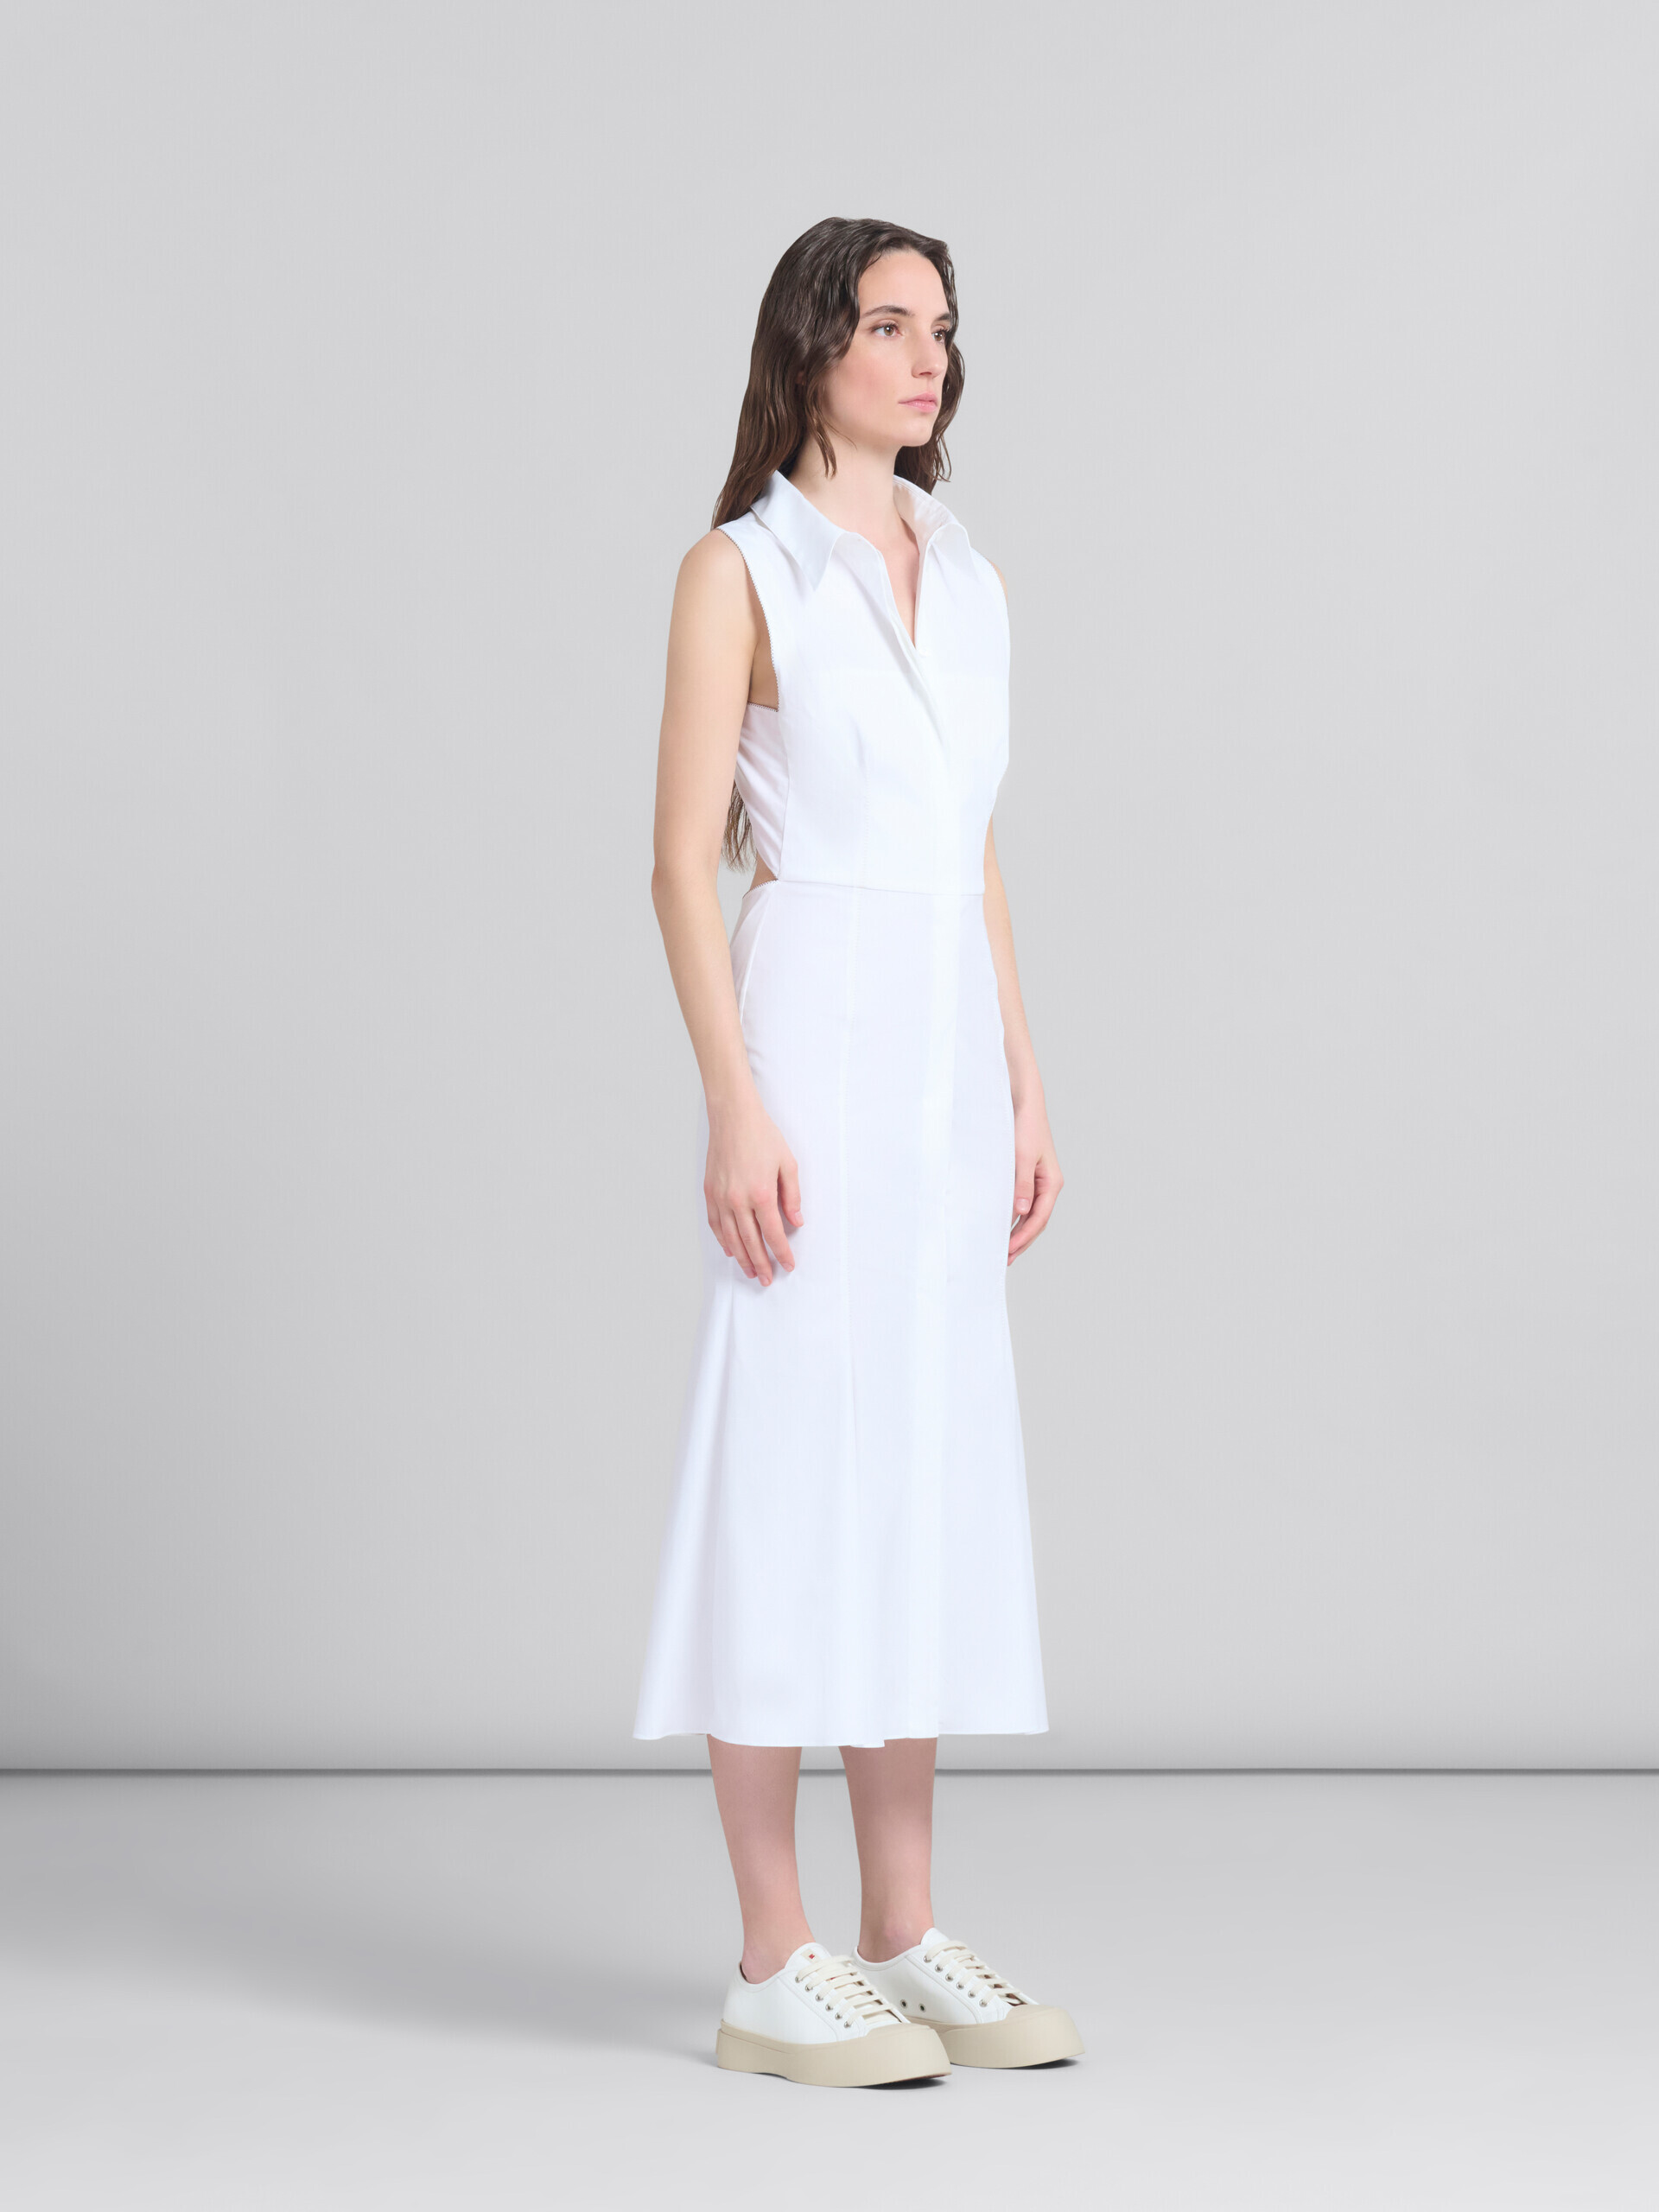 화이트 오가닉 포플린 머메이드 드레스 - 드레스 - Image 6